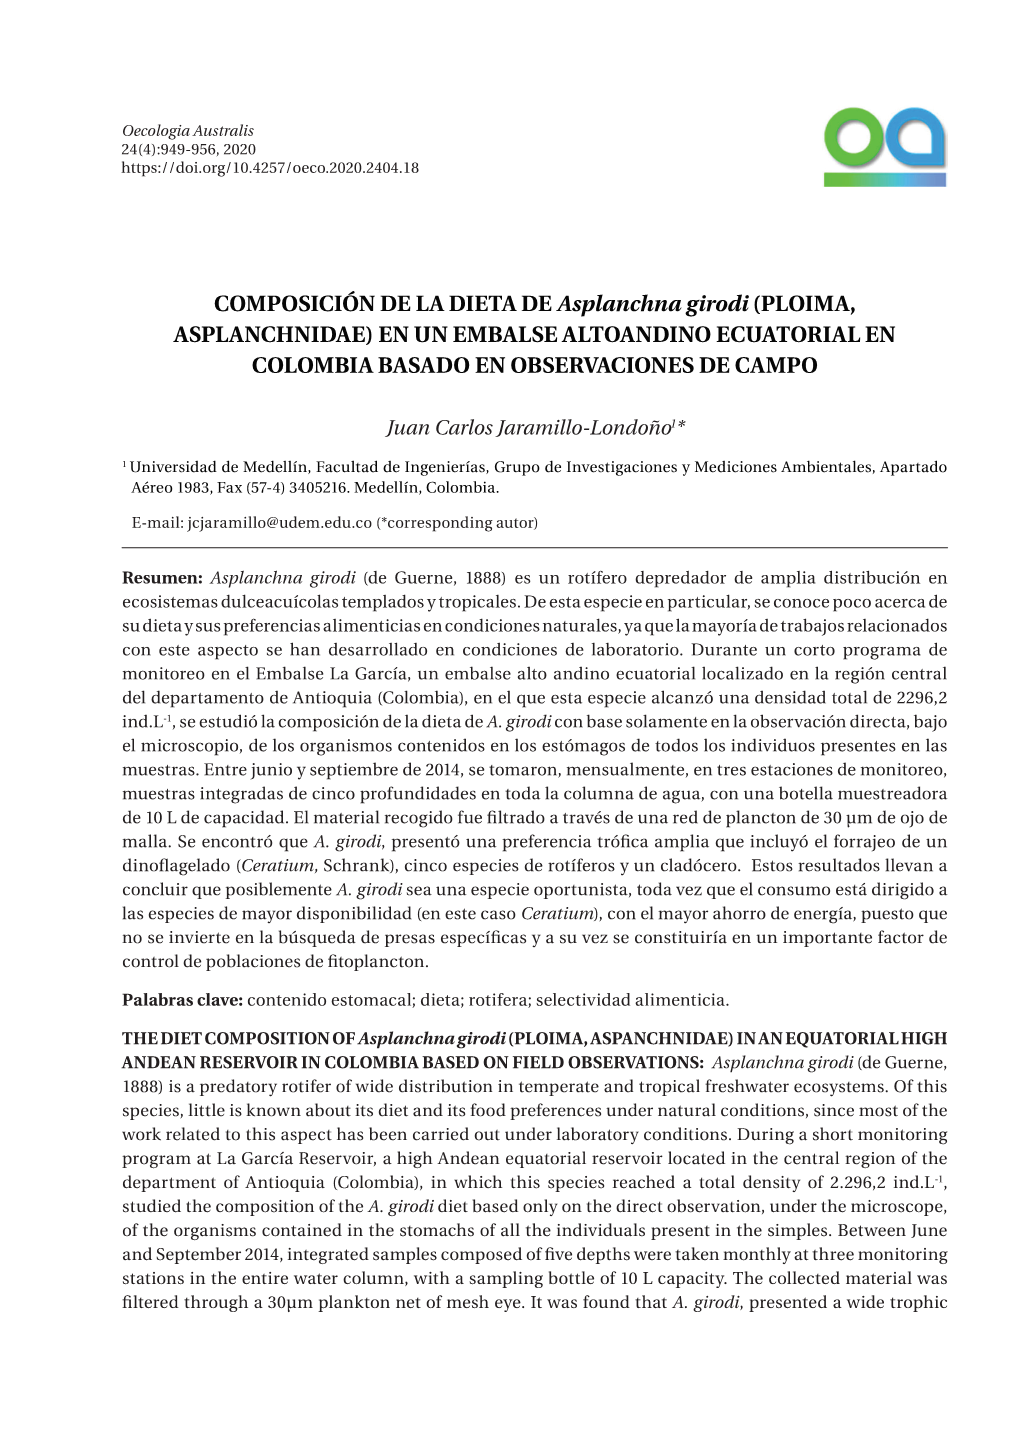 COMPOSICIÓN DE LA DIETA DE Asplanchna Girodi (PLOIMA, ASPLANCHNIDAE) EN UN EMBALSE ALTOANDINO ECUATORIAL EN COLOMBIA BASADO EN OBSERVACIONES DE CAMPO